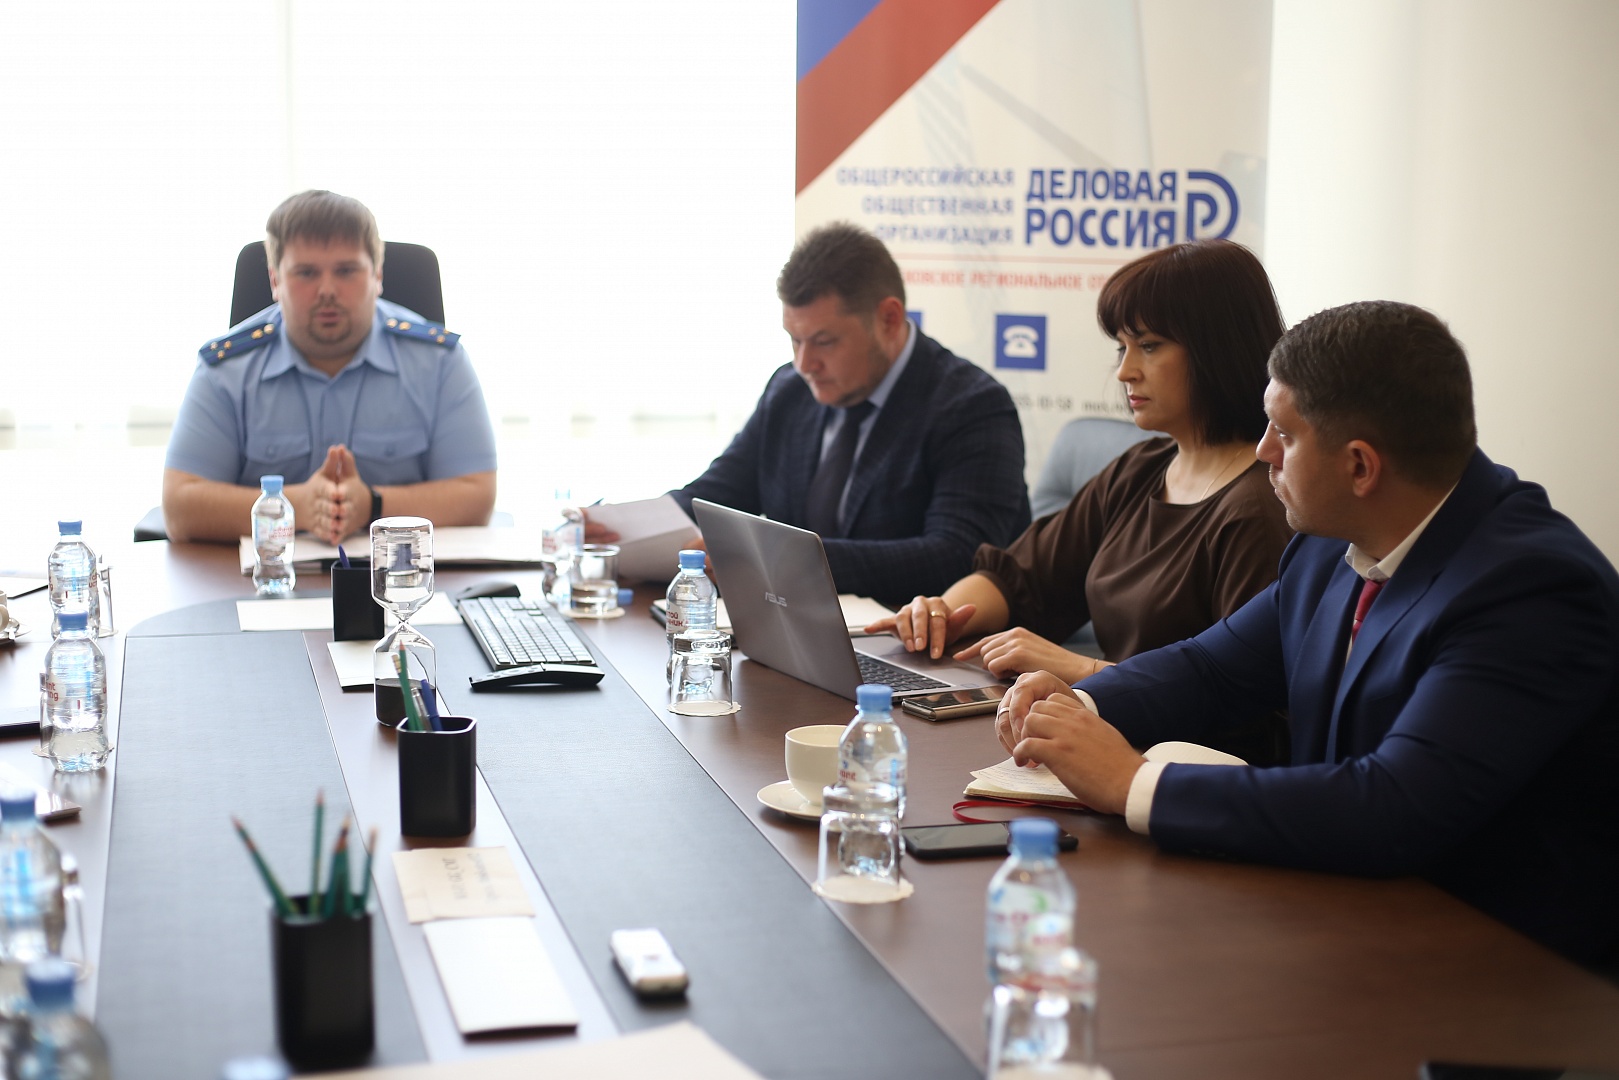 В московской «Деловой России» состоялся Круглый стол с межрегиональной транспортной прокуратурой совместно с Центром правовой поддержки бизнеса